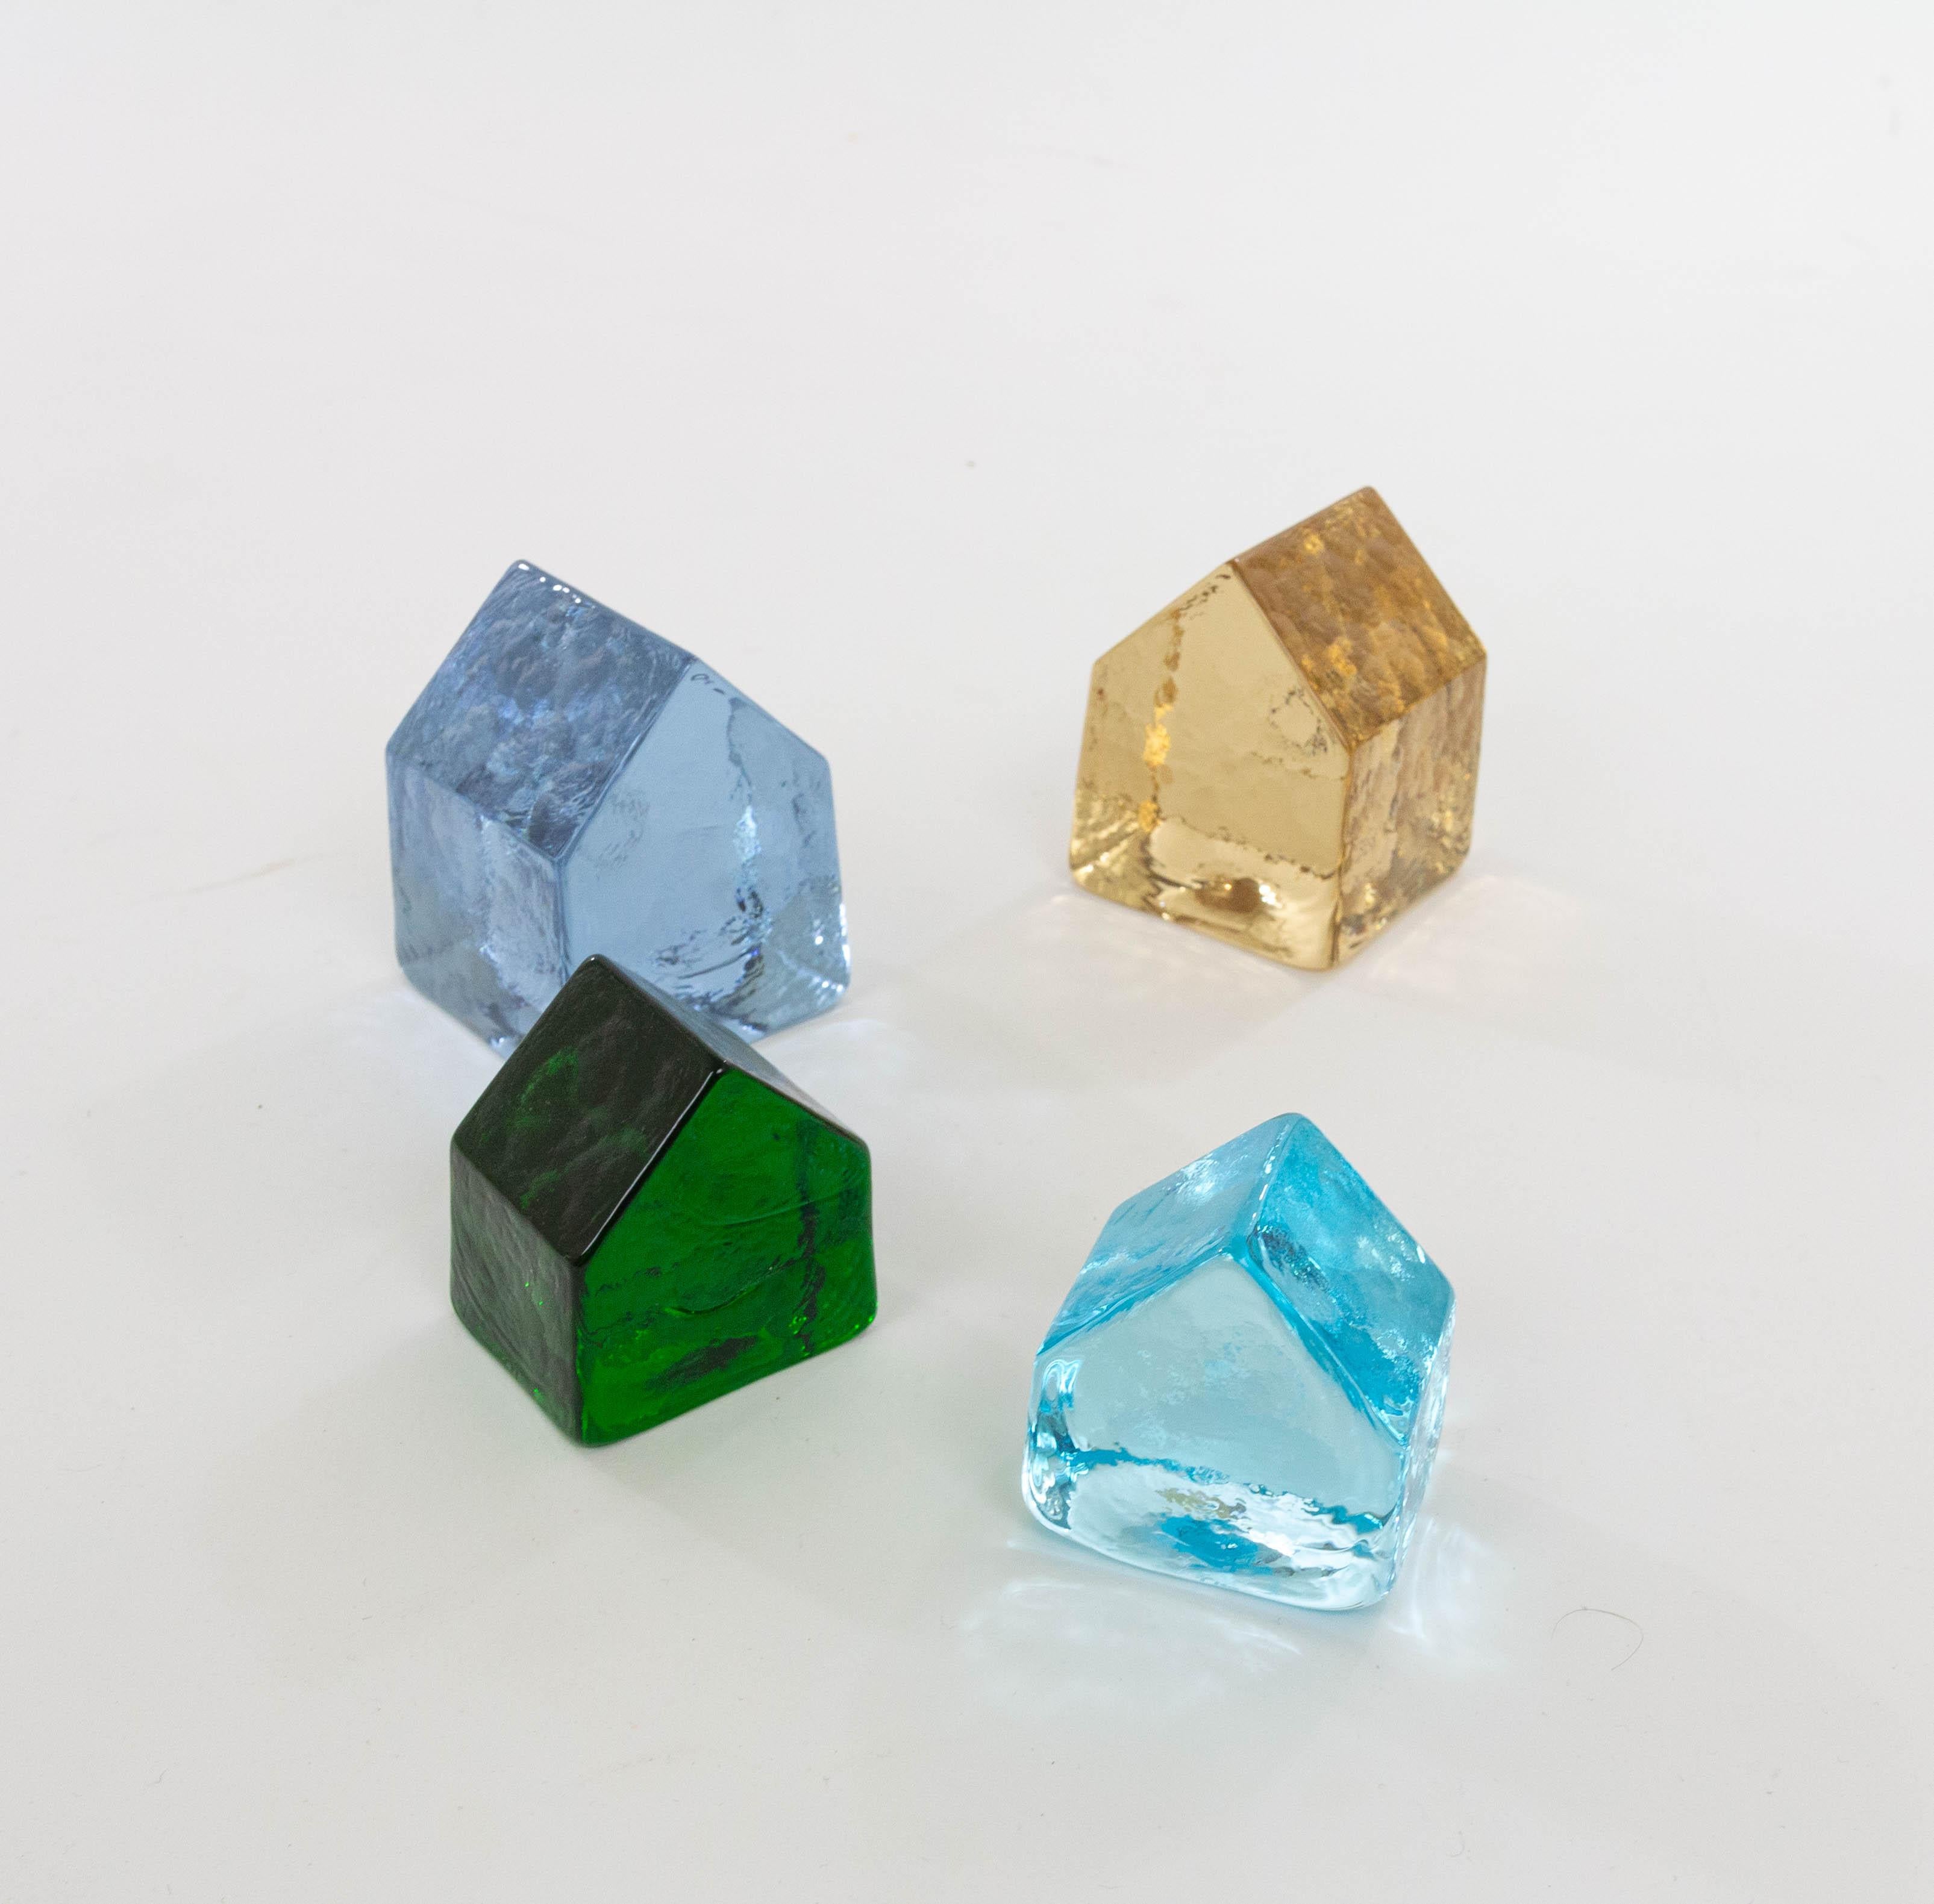 Carlo Nason a conçu ces objets dans les années 1970 pour V.I.Ine, la société de son père Vincenzo Nason.

Elles sont fabriquées en verre de Murano et se déclinent en quatre couleurs éclatantes. Les pièces peuvent être utilisées comme objets